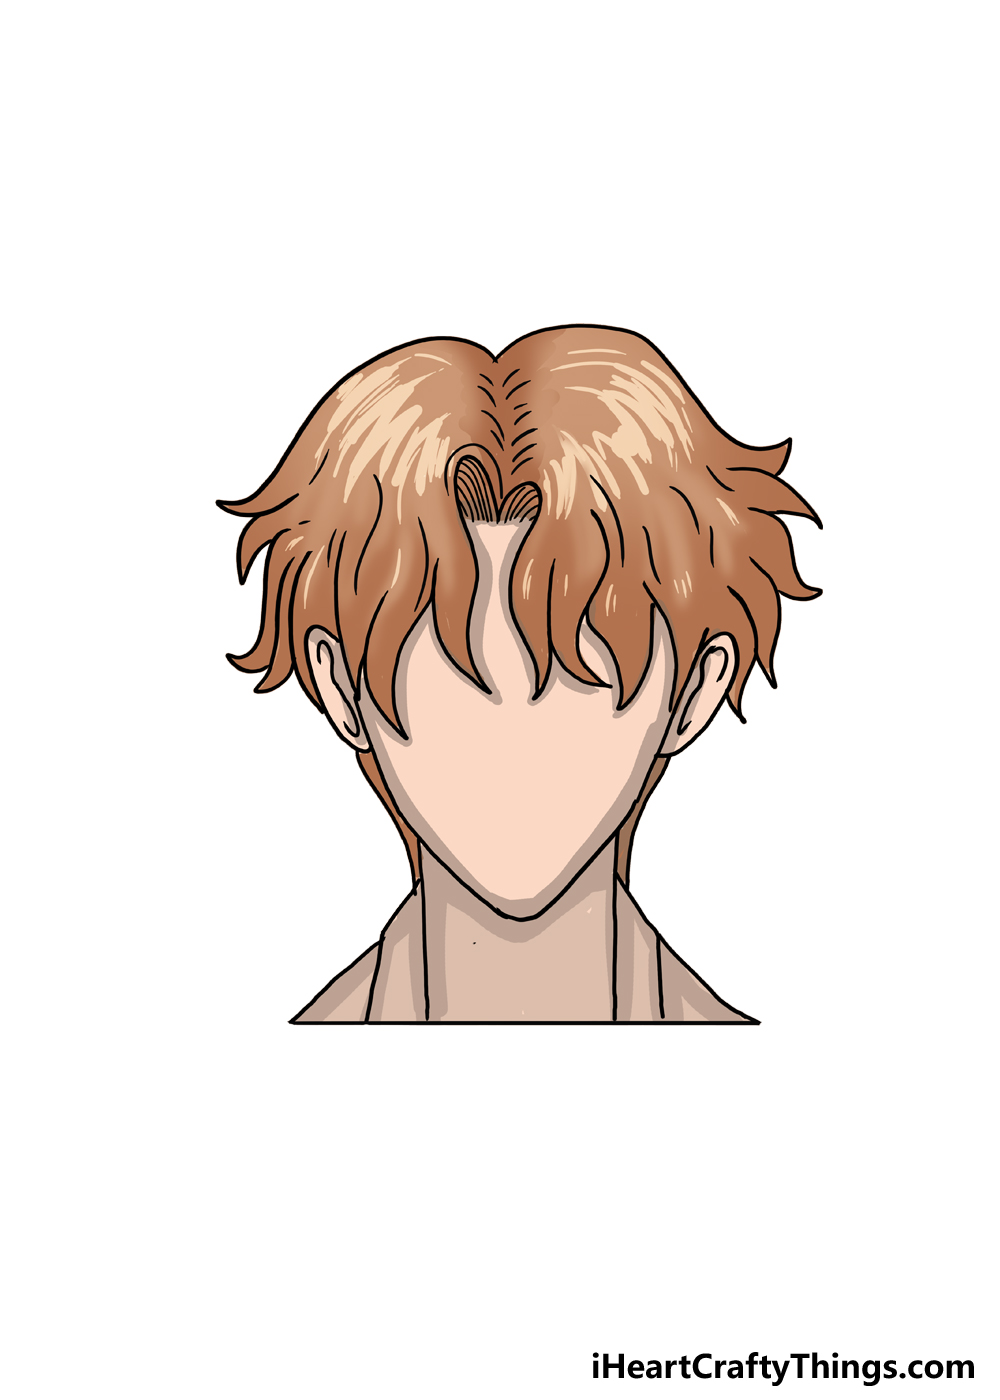 How to Draw Anime Boys Hair step 6